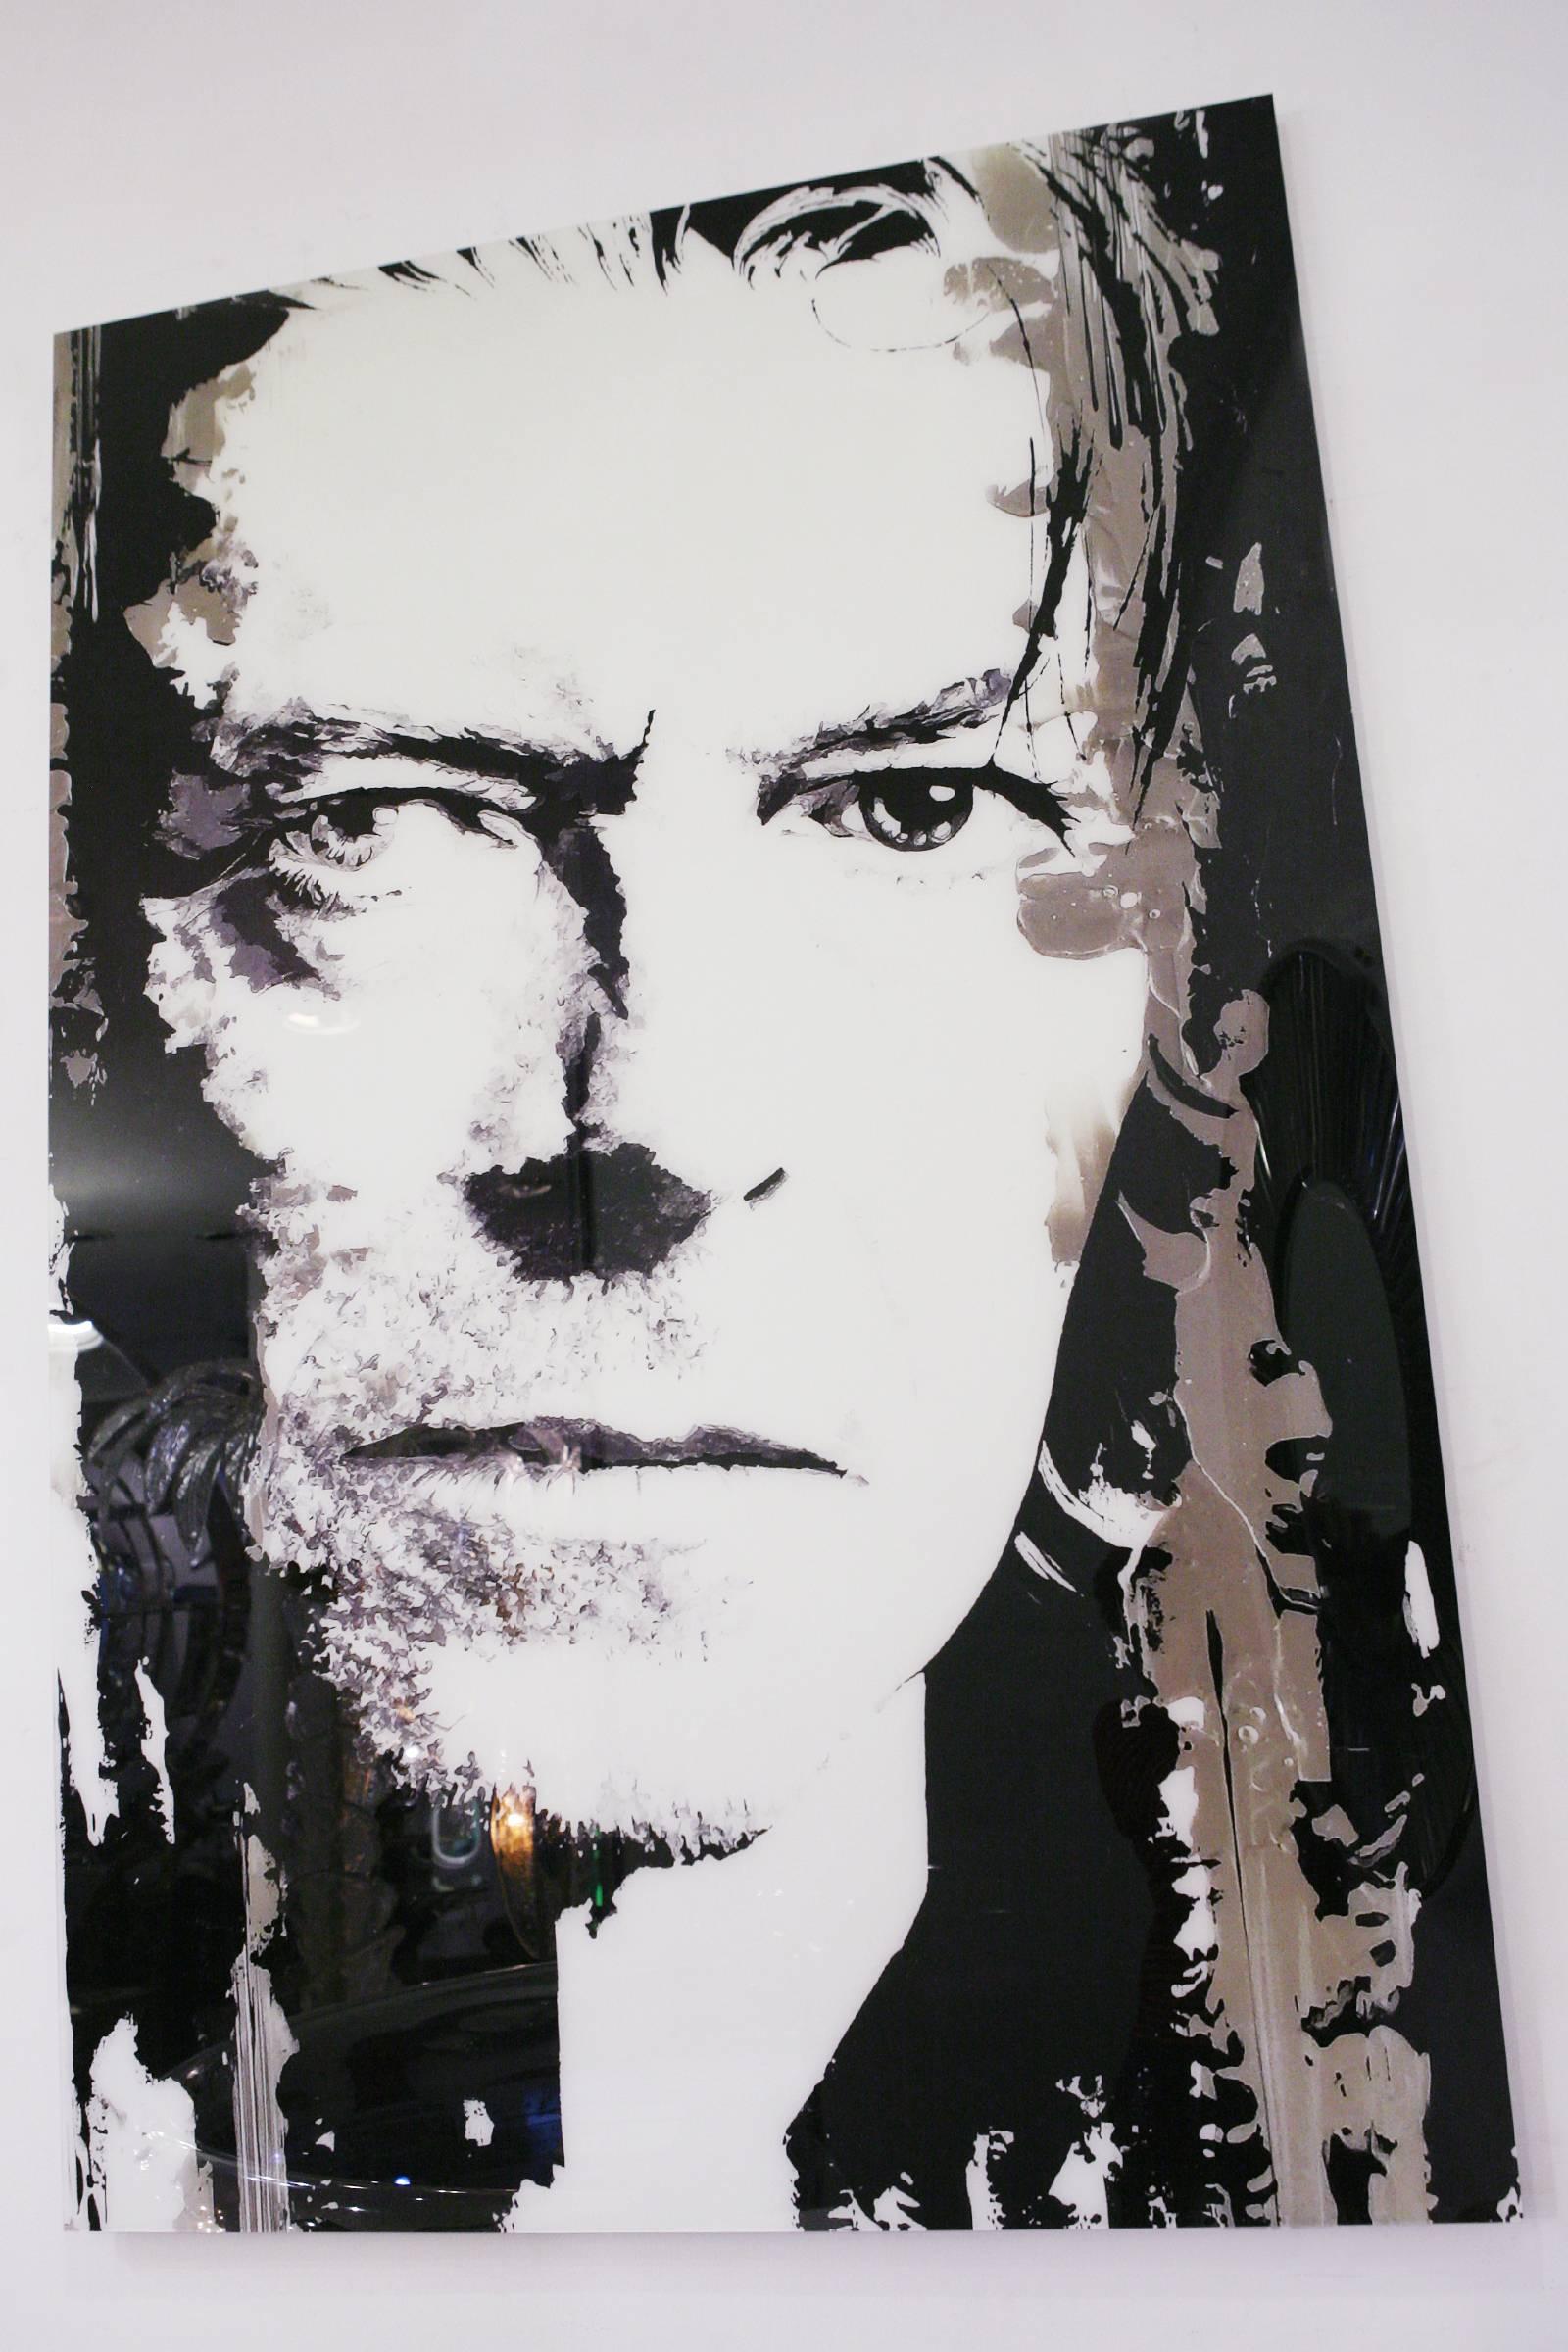 Photographie David Bowie sur plexiglas.
Édition limitée à six exemplaires. Fait par Valery 
Artistics Durand. Livré avec certificat.
